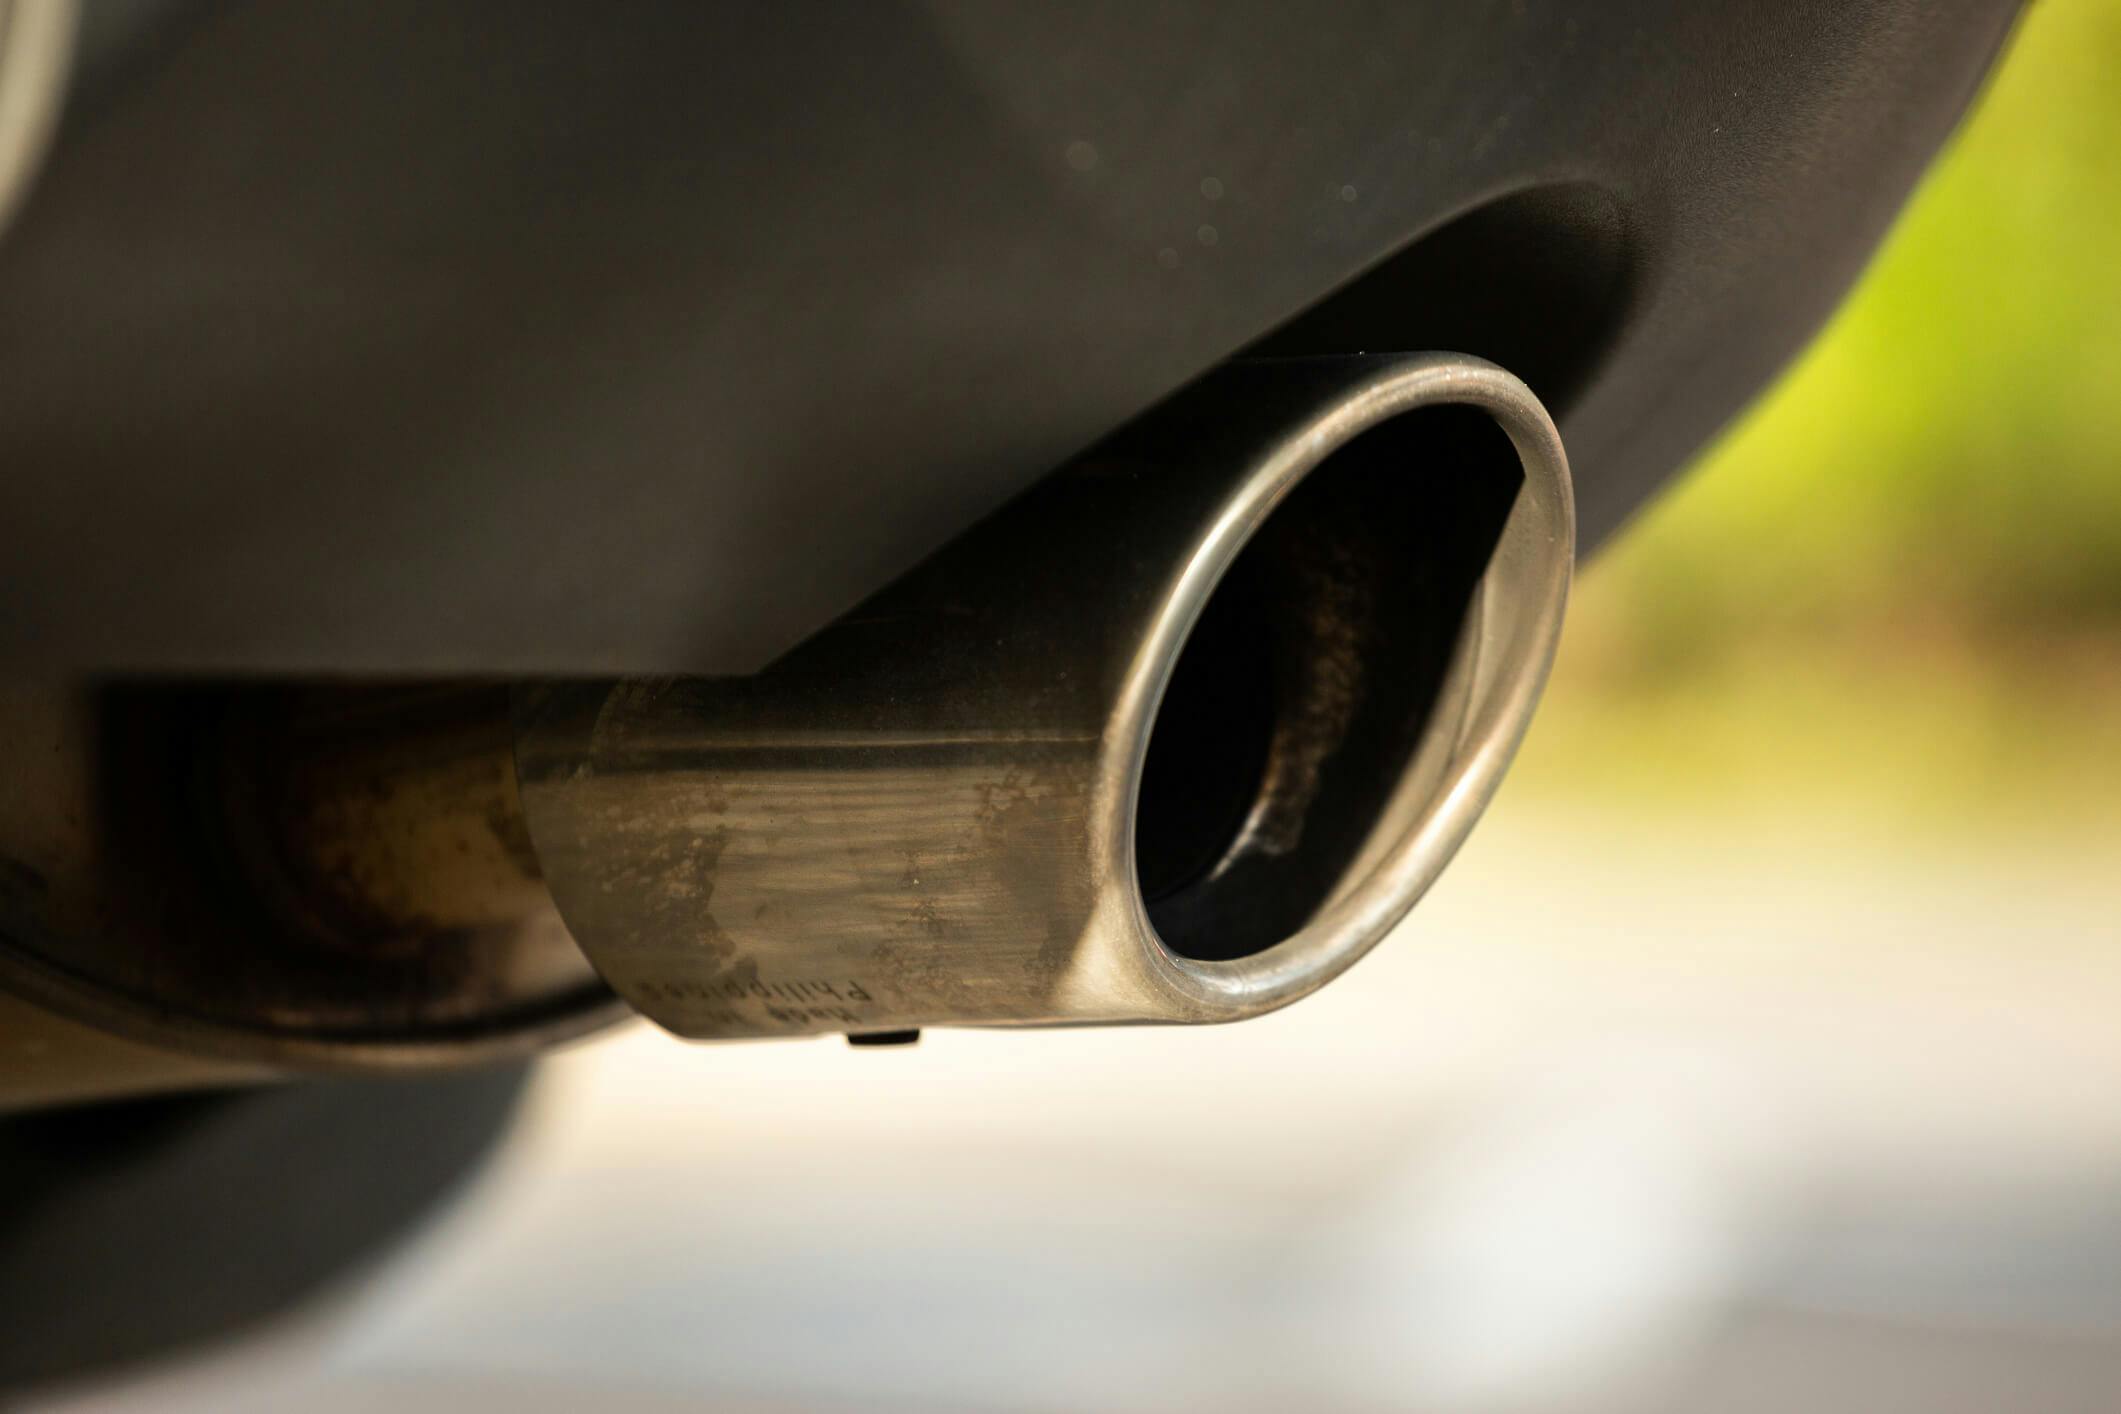 Elhybridens batteri används för att stötta förbränningsmotorn och minska bilens utsläpp.